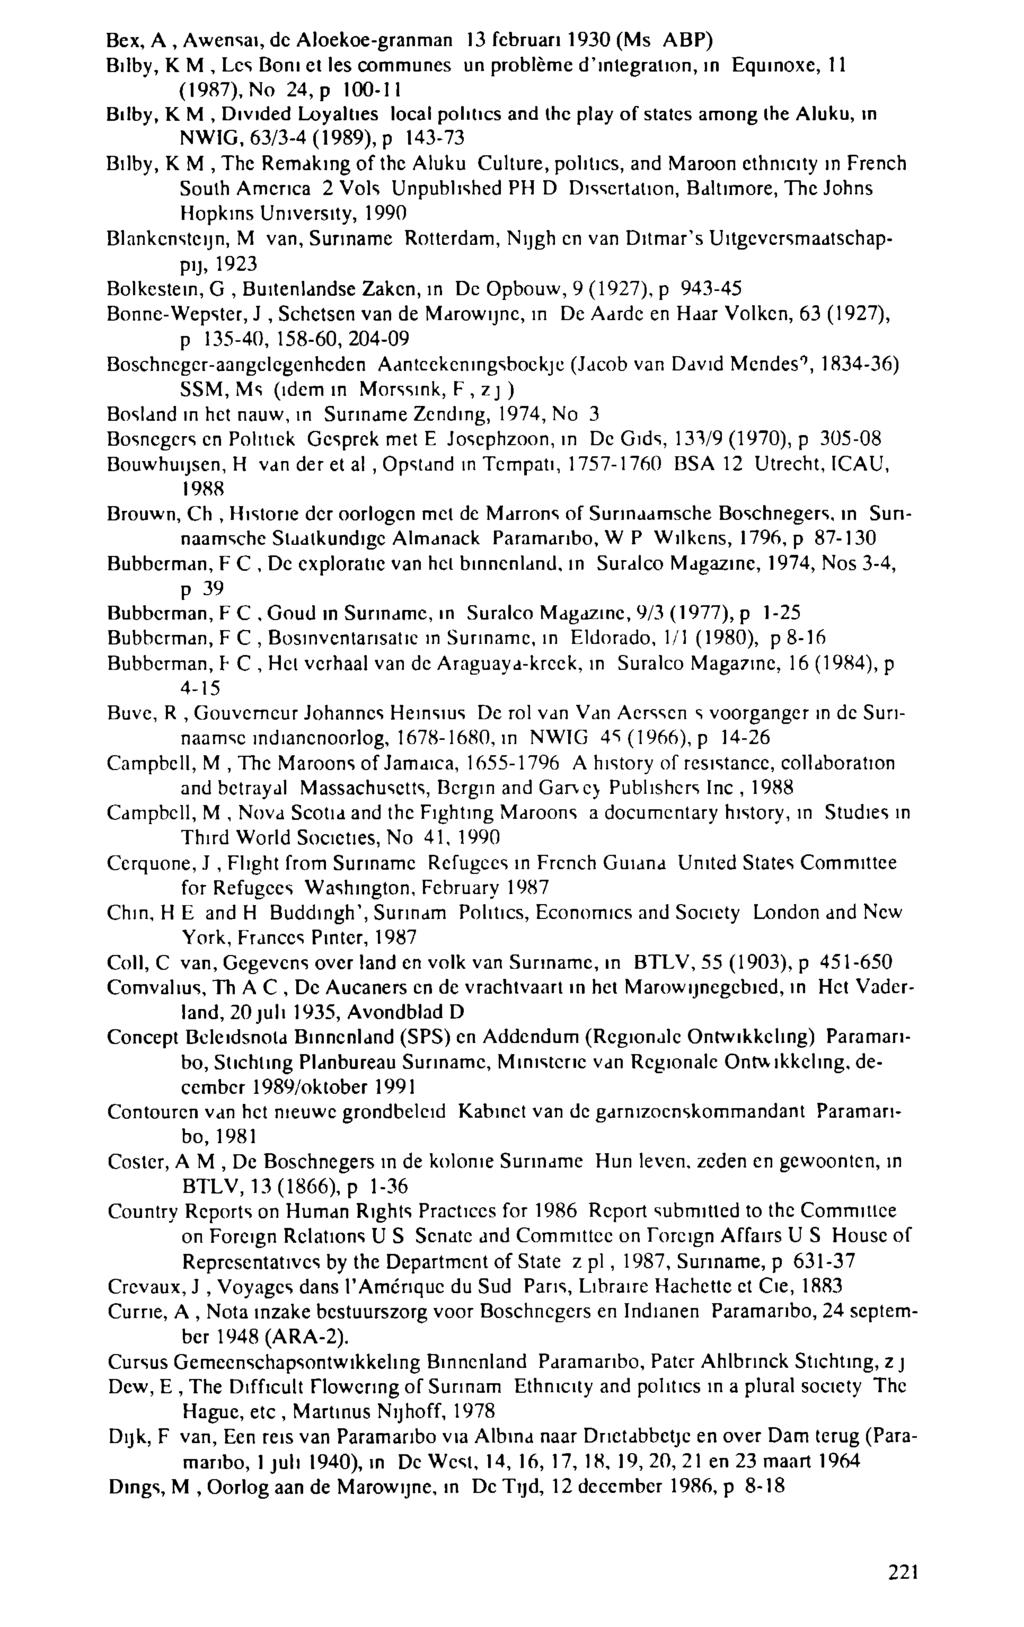 Вех, А, Awensai, de Aloekoe-granman 13 februari 1930 (Ms ABP) Bilby, Κ M, Les Boni et les communes un problème d'integration, m Equinoxe, 11 (1987), No 24, ρ 100-11 Bilby, Κ M, Divided Loyalties